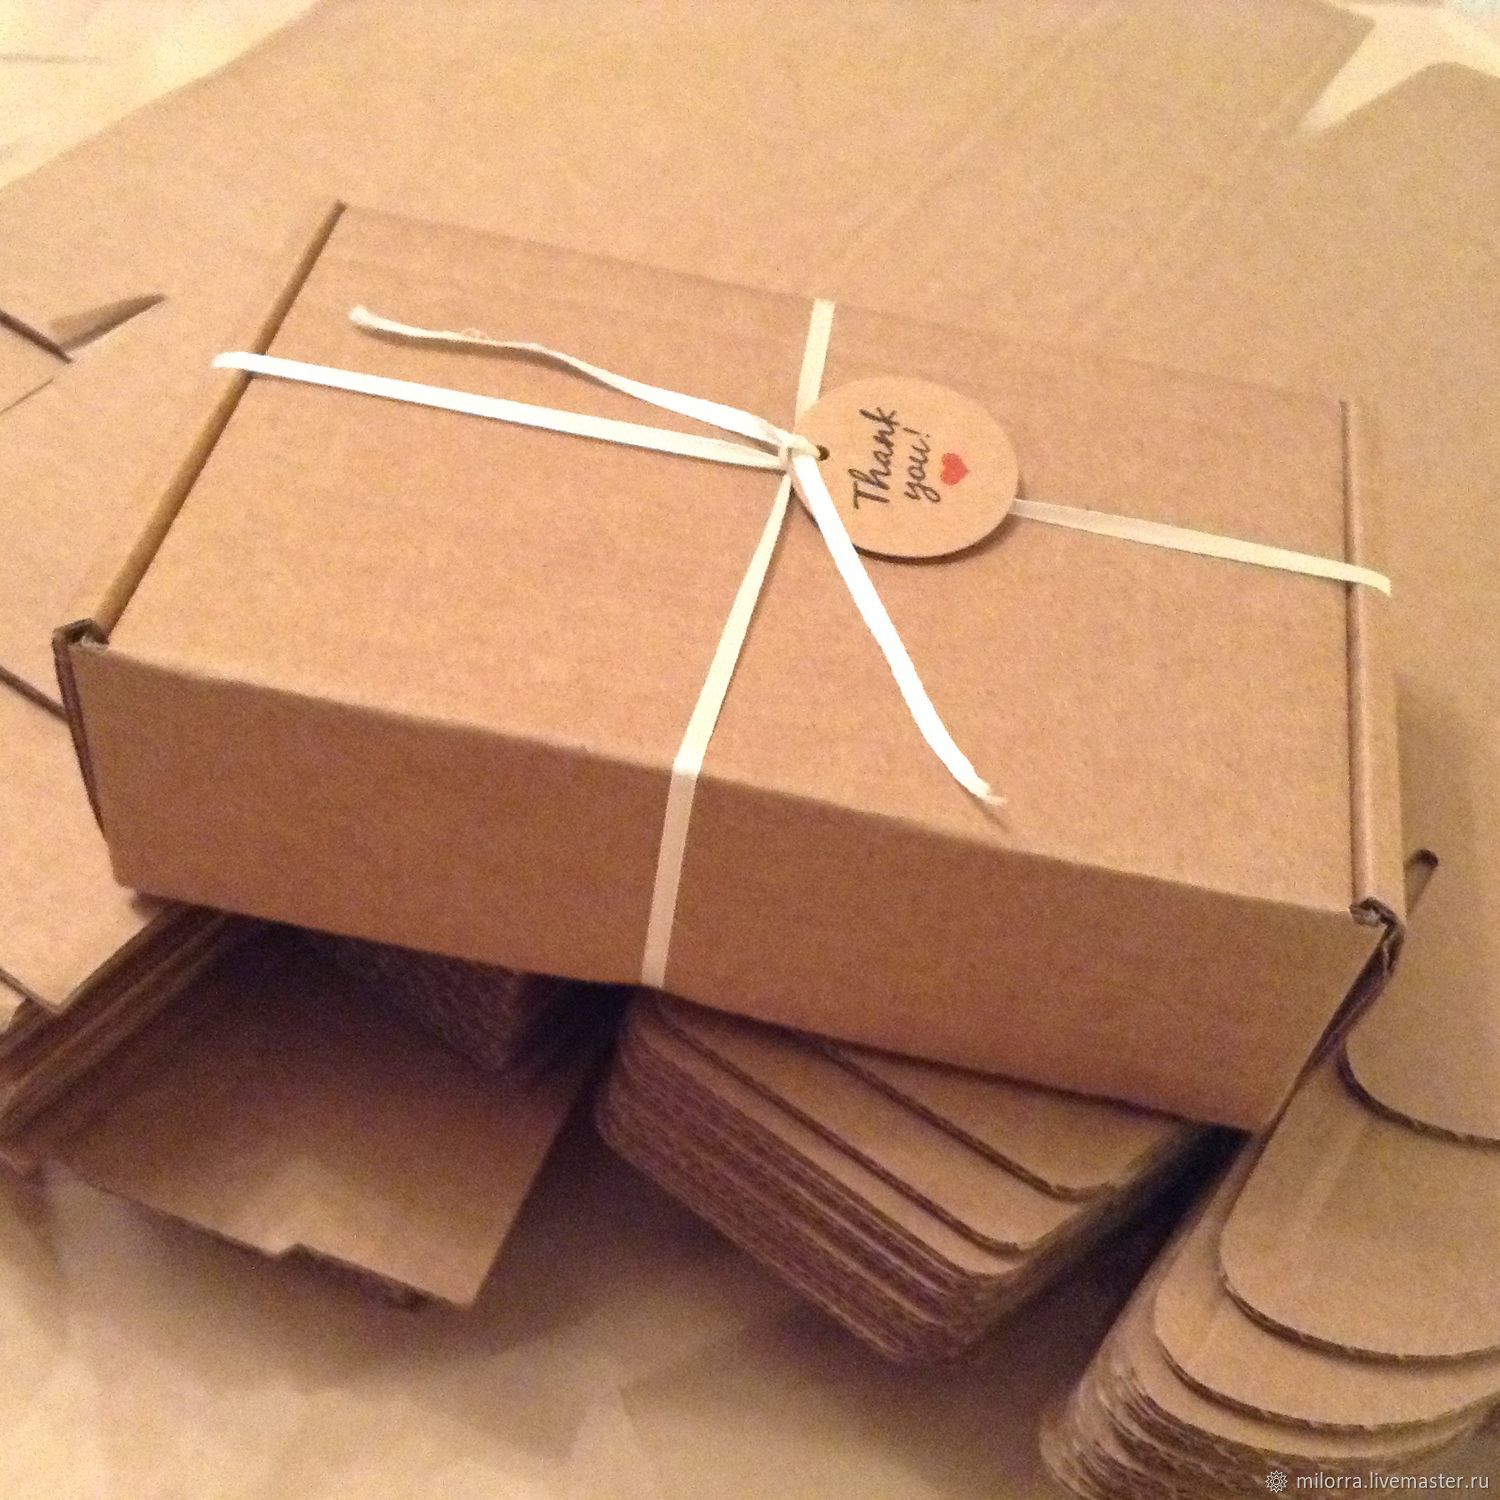 Упаковка купить воронеж. Коробка самосборная, белая, 22 х 16,5 х 10 см. Коробка подарочная «Zand» m, крафт, самосборная, 23,5 х 17,5 х 6,3 см, картон. Крафтовая коробка. Коробки для упаковки товара.